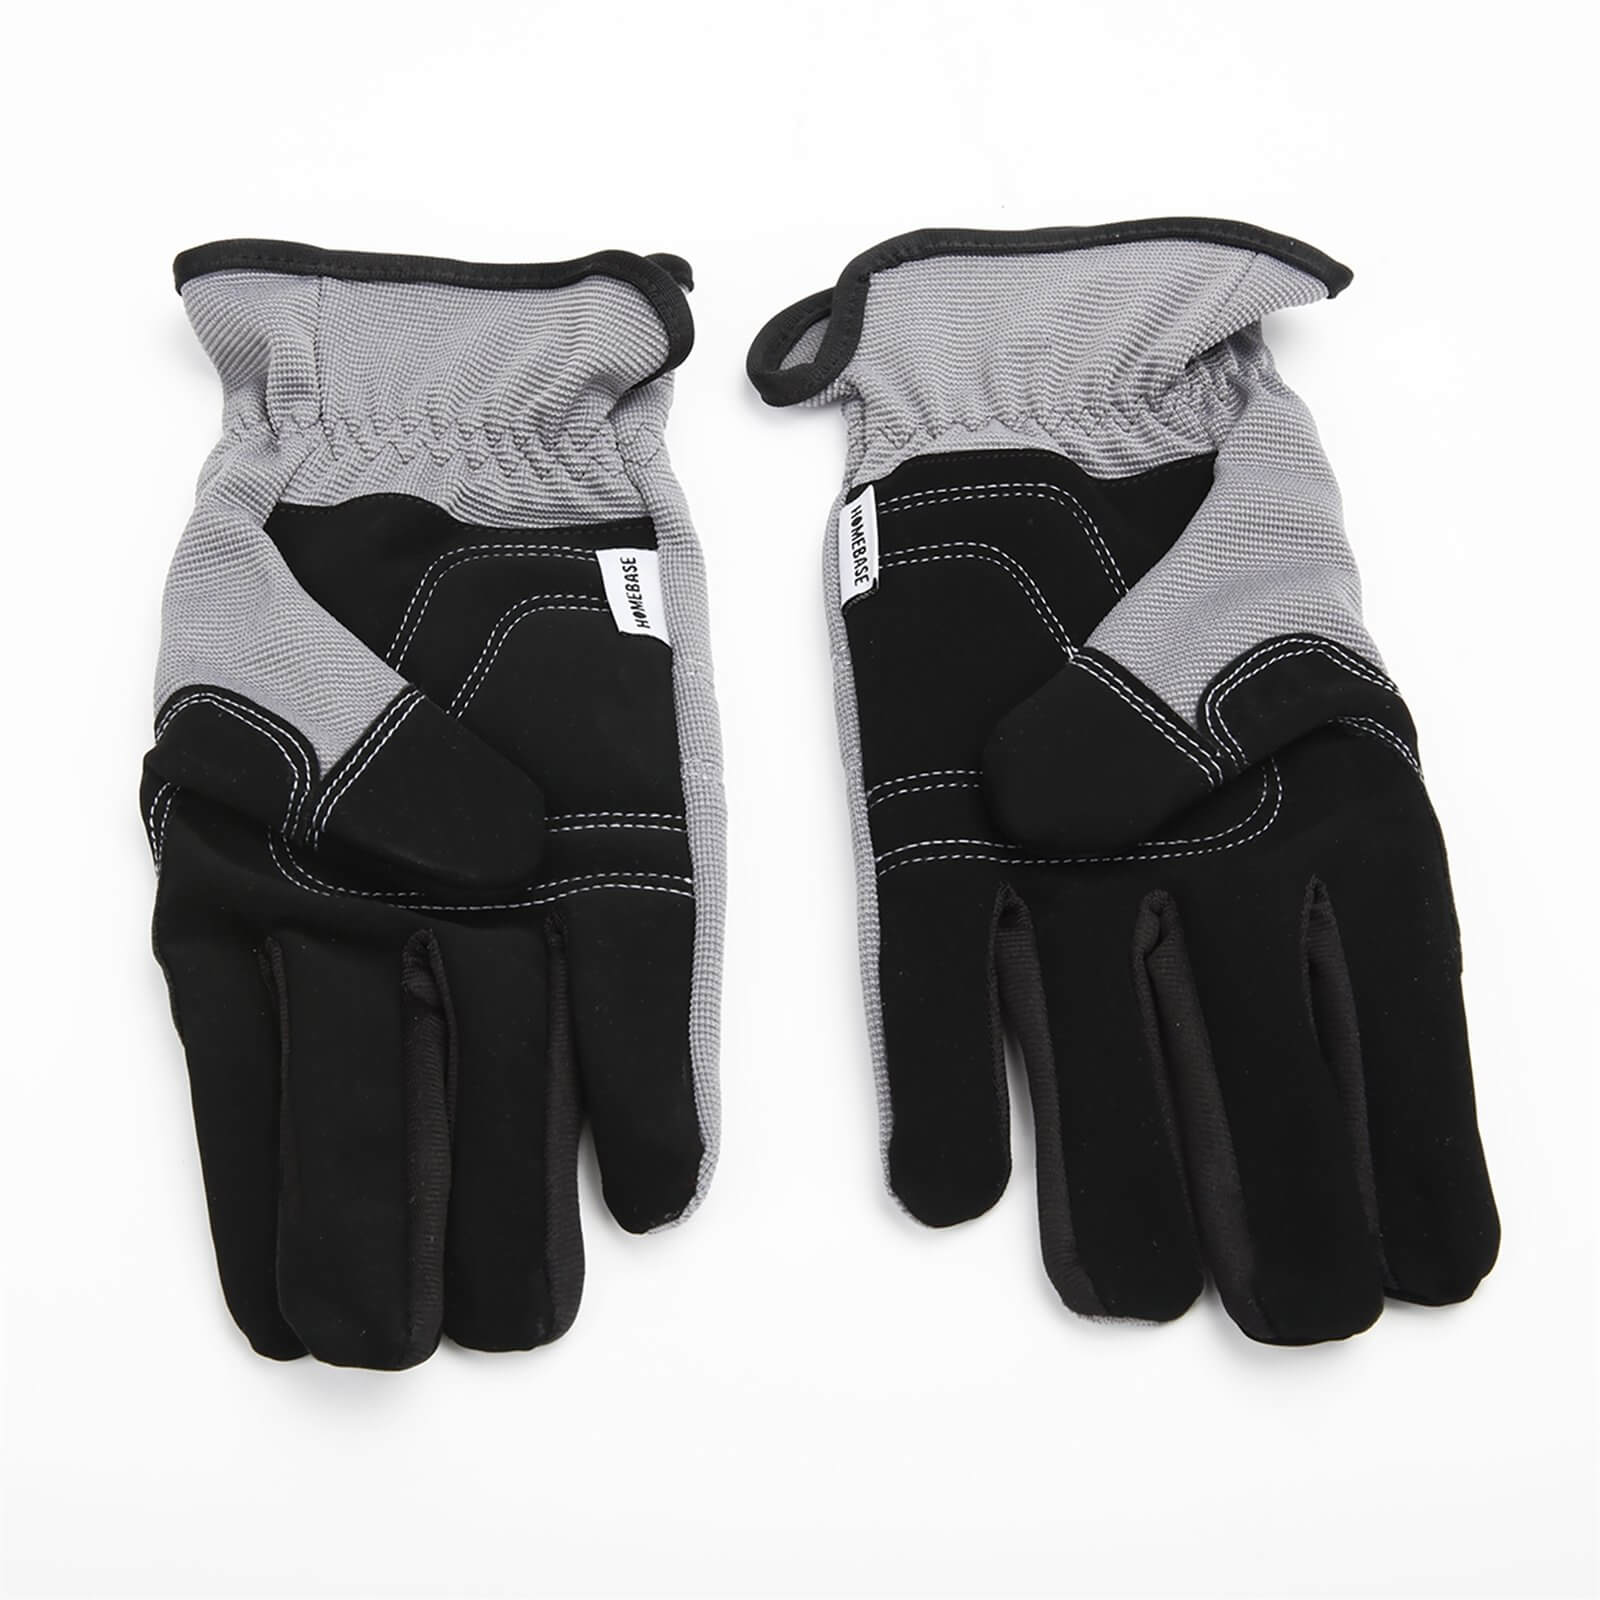 Homebase Protective Gardener Gloves - Large